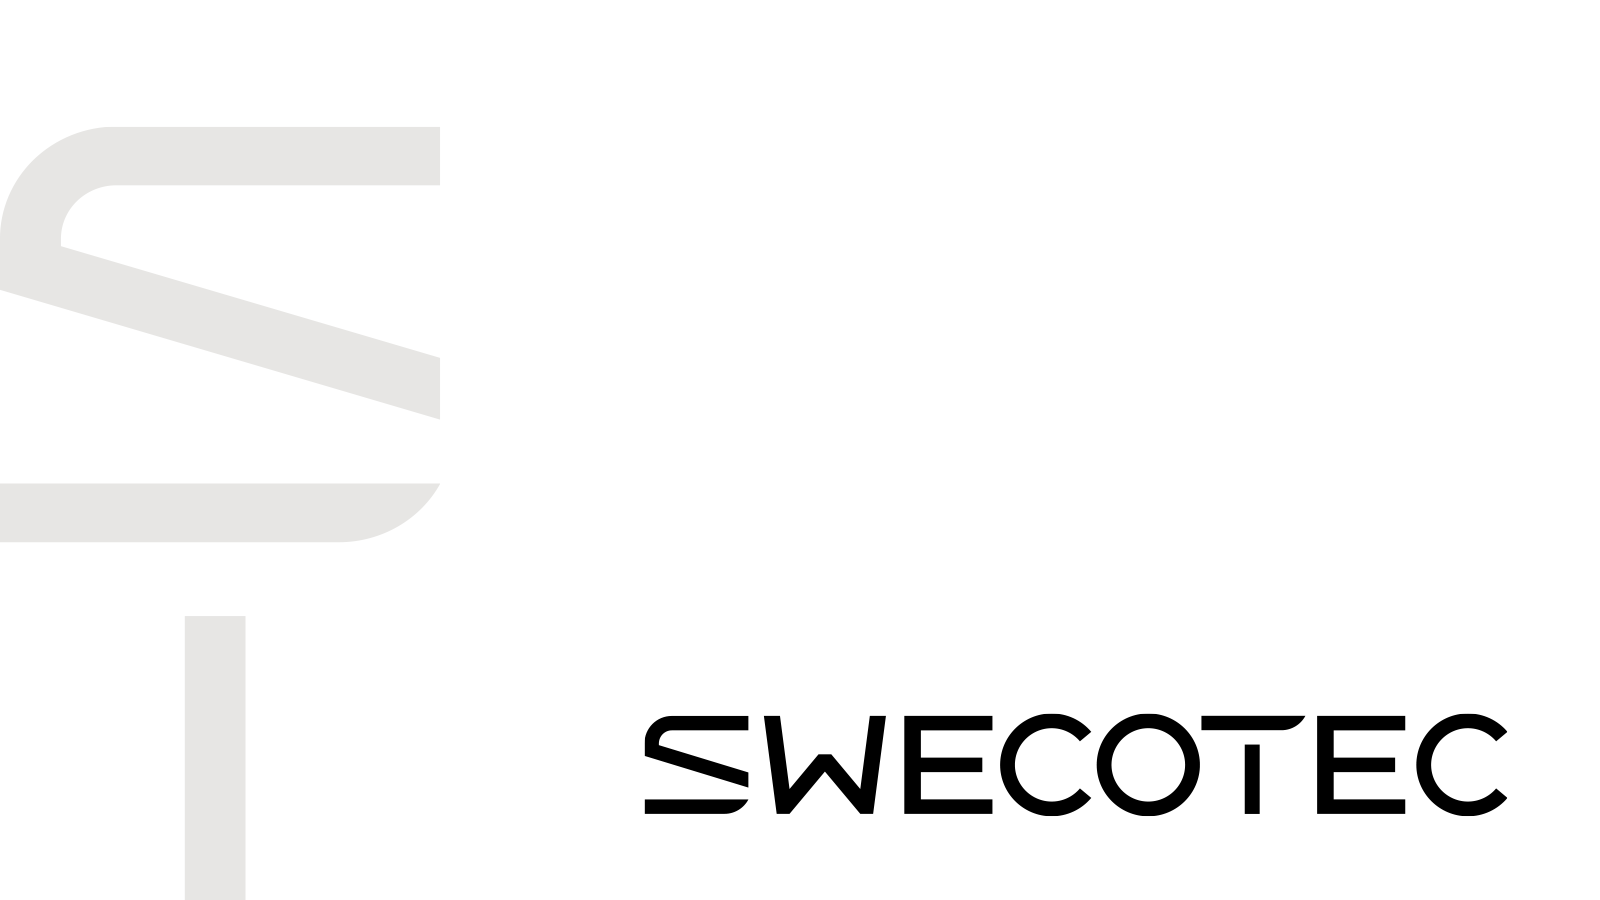 (c) Swecotec.com